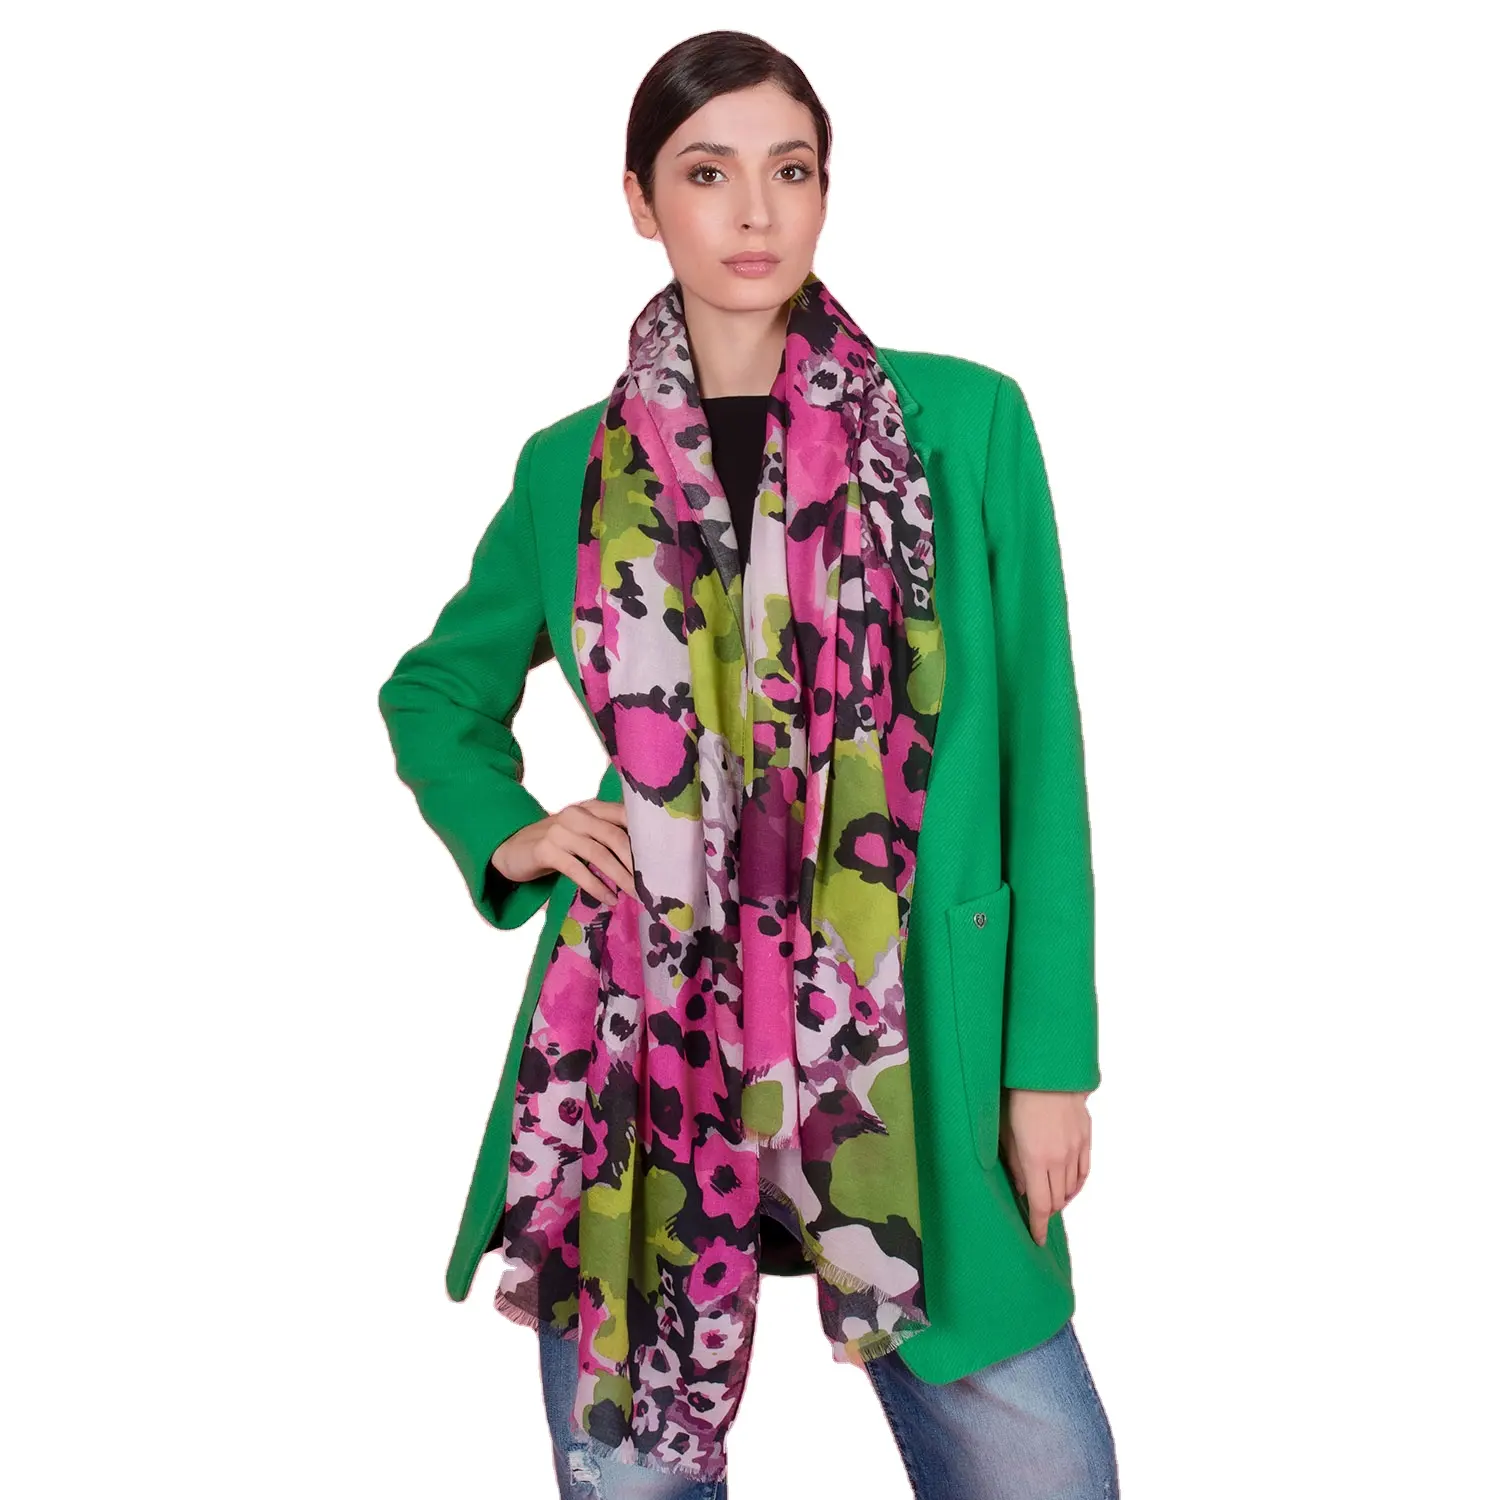 Высококачественный модальный цветочный шарф Cachemire, сделанный в Италии для роскошного женского стиля